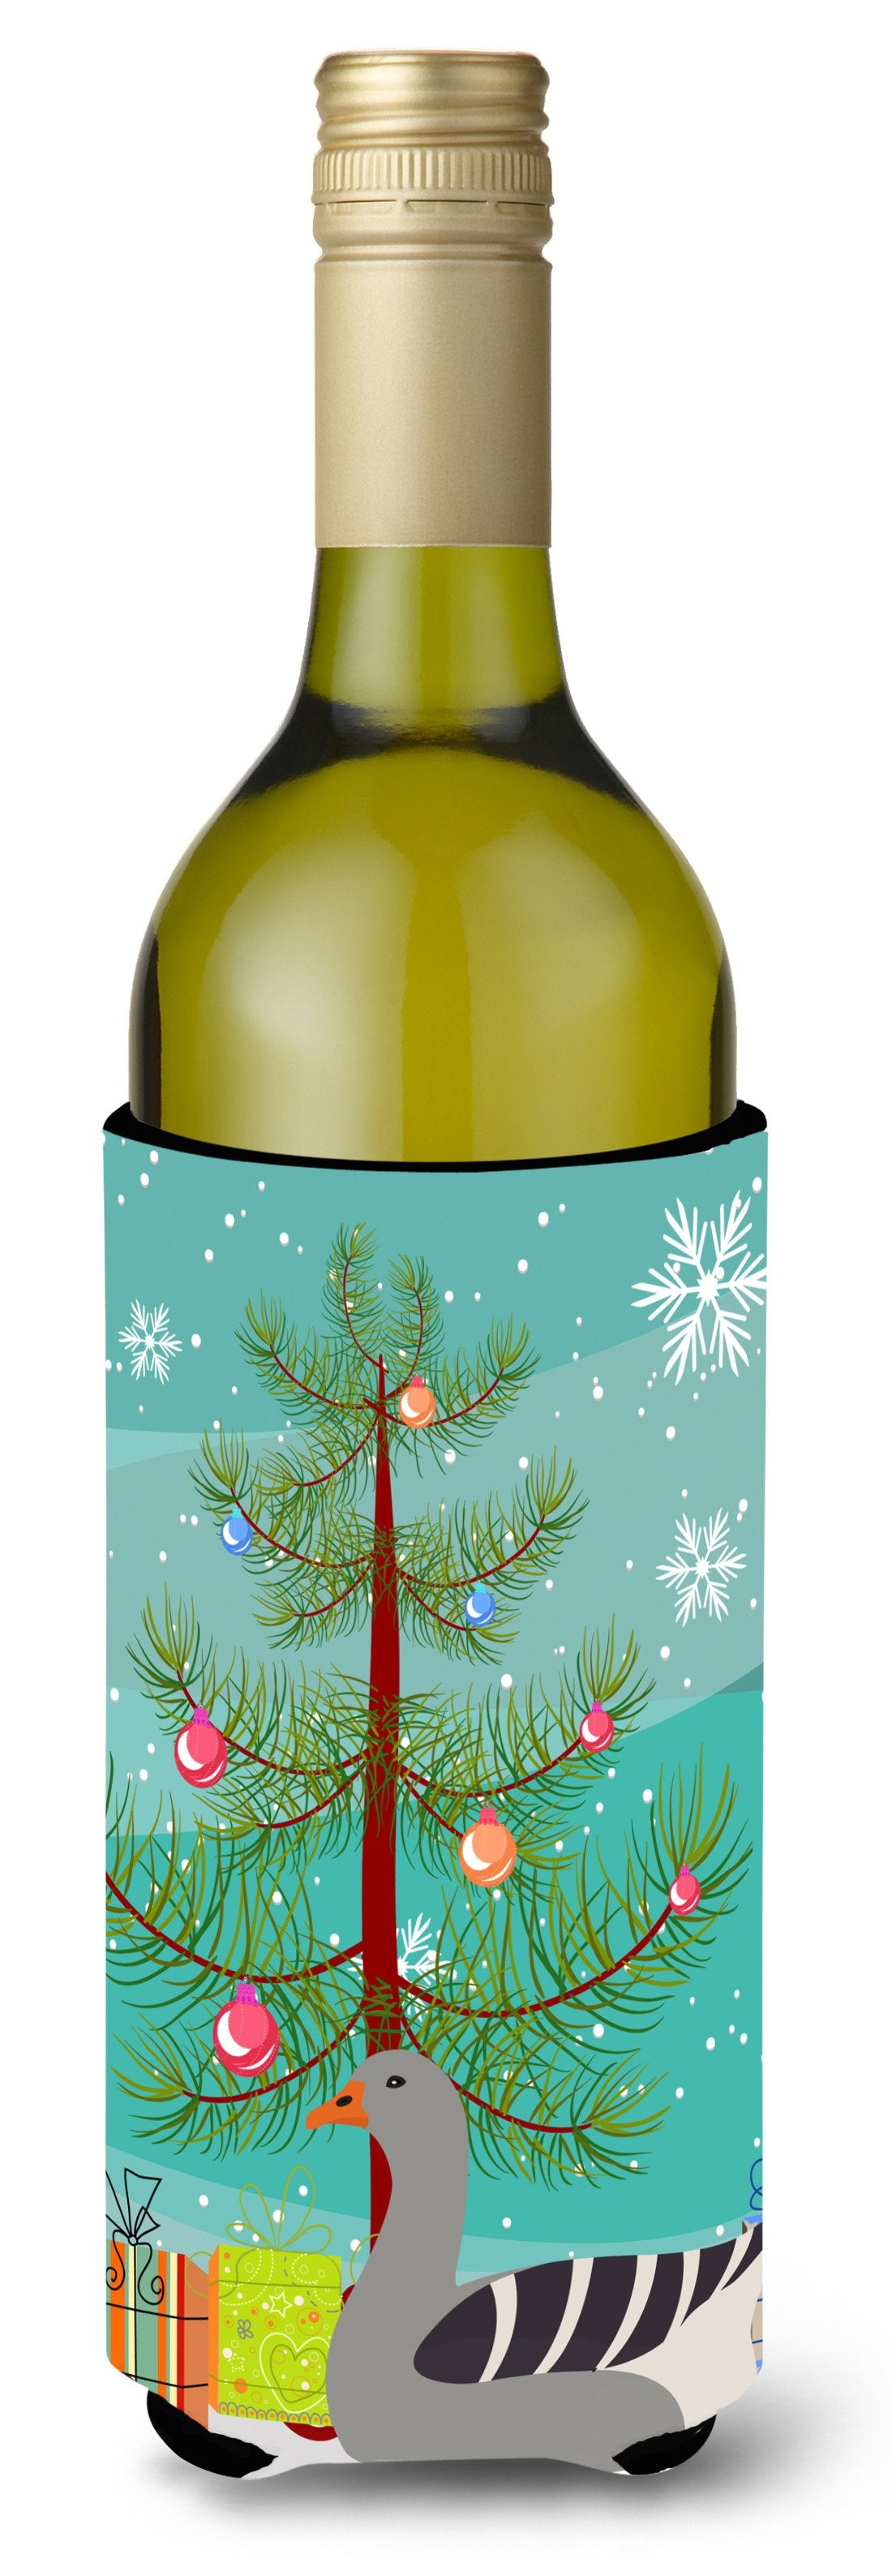 Pilgrim Goose Christmas Wine Bottle Beverge Insulator Hugger BB9260LITERK by Caroline's Treasures